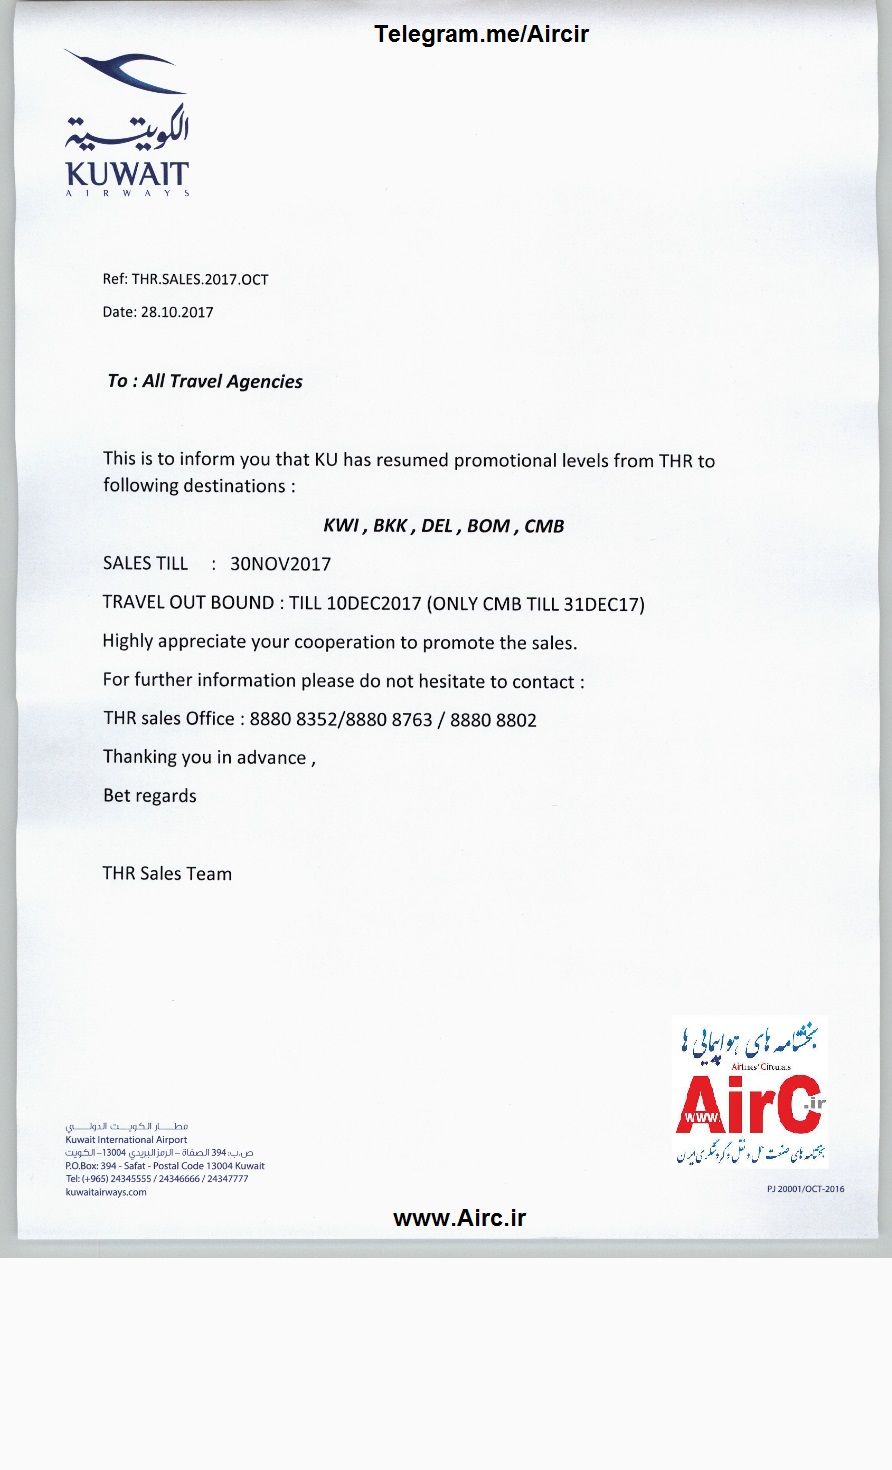 بخشنامه و اطلاعیه   هواپیمایی کویت درباره نرخ ویژه از تهران به کویت ، بانکوک ، دهلی ، بمبئی ، کلمبو تا 30 نوامبر 2017